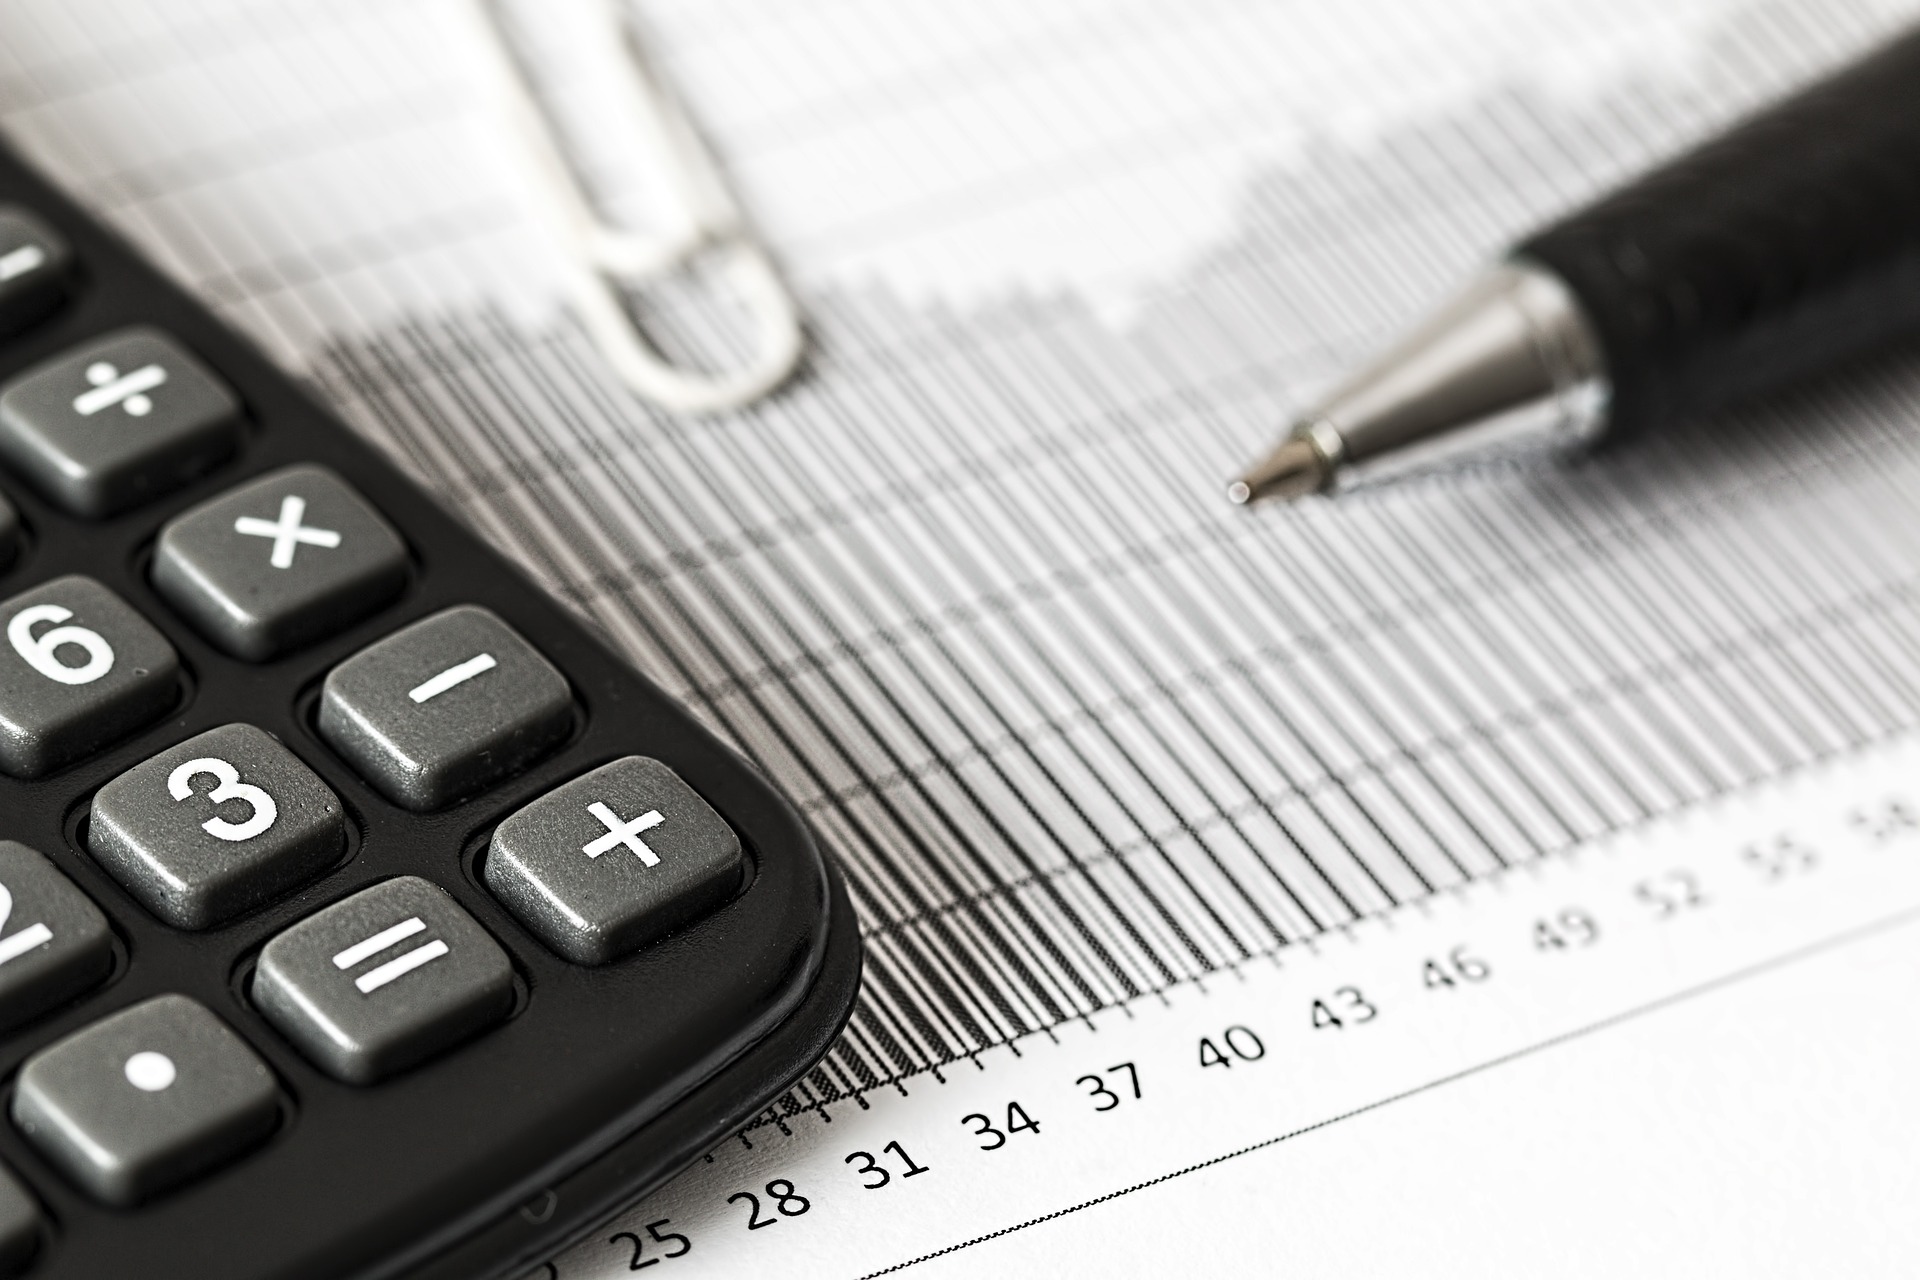 Declaração de imposto de renda pode mudar para motoristas de aplicativo (Foto: Steve Buissinne / Pixabay)